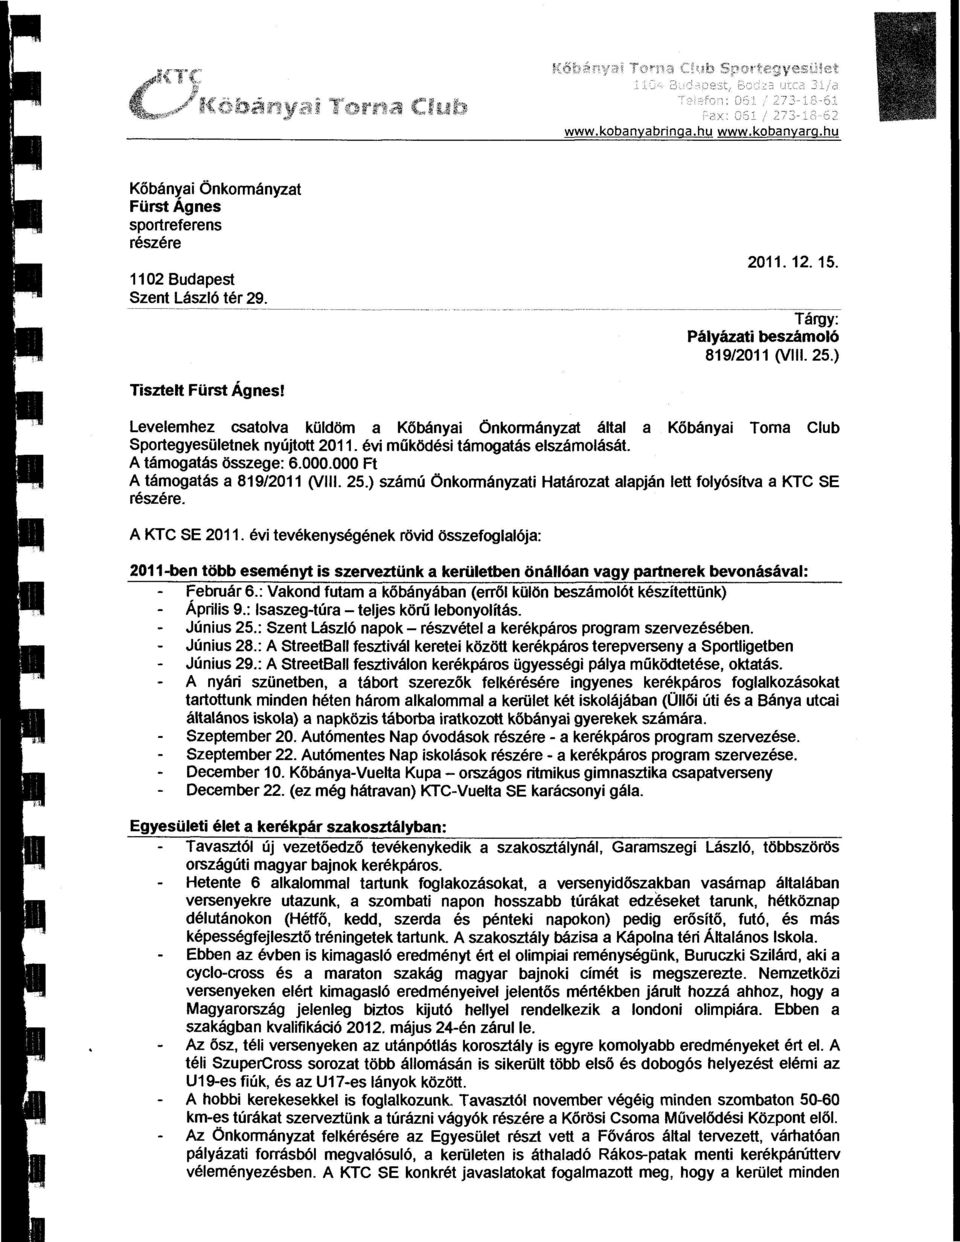 000 Ft A támgatás a 819/2011 (VIi. 25.) számú Önkrmányzati Határzat aapján ett fyósítva aktcse részére. A KTC SE 2011.